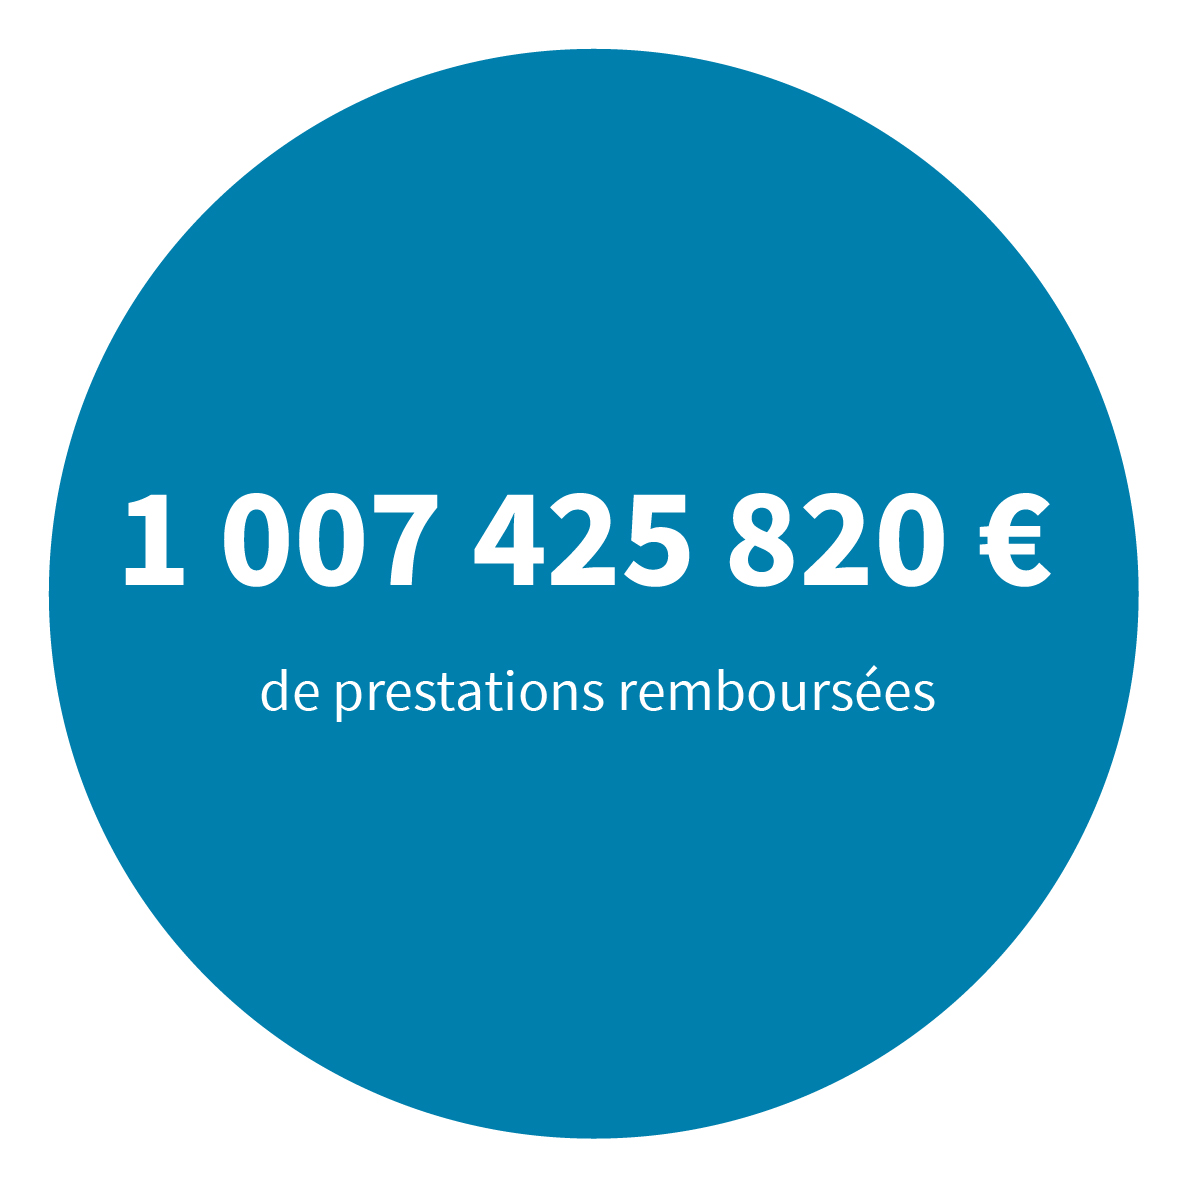 191,9 milliards d'euros de prestations remboursées